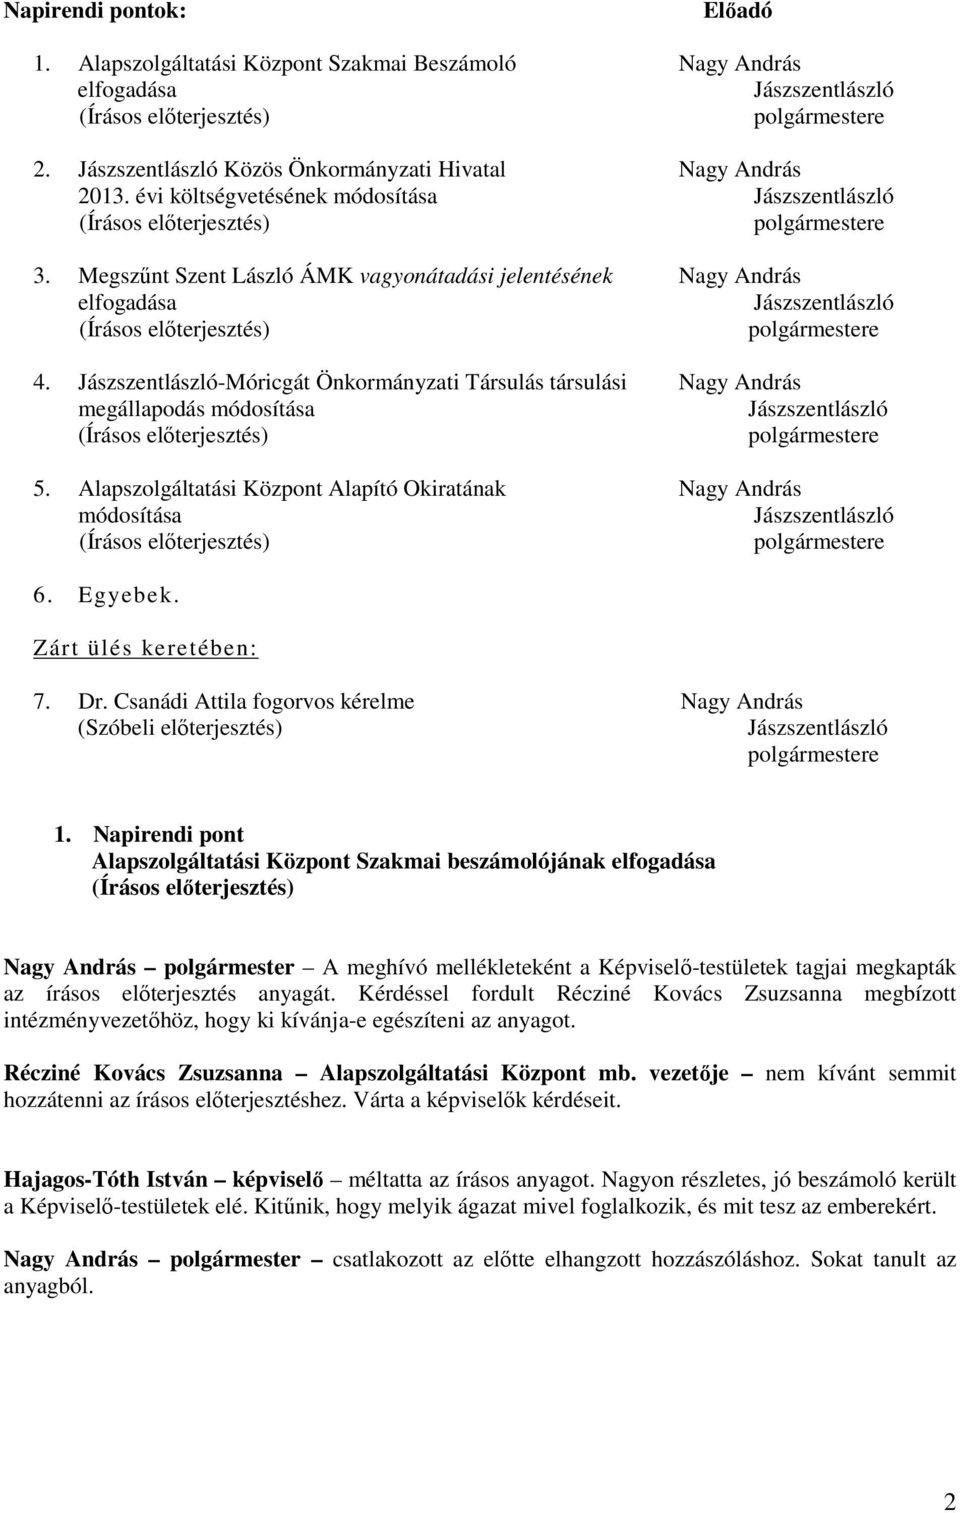 Jászszentlászló-Móricgát Önkormányzati Társulás társulási Nagy András megállapodás módosítása Jászszentlászló polgármestere 5.